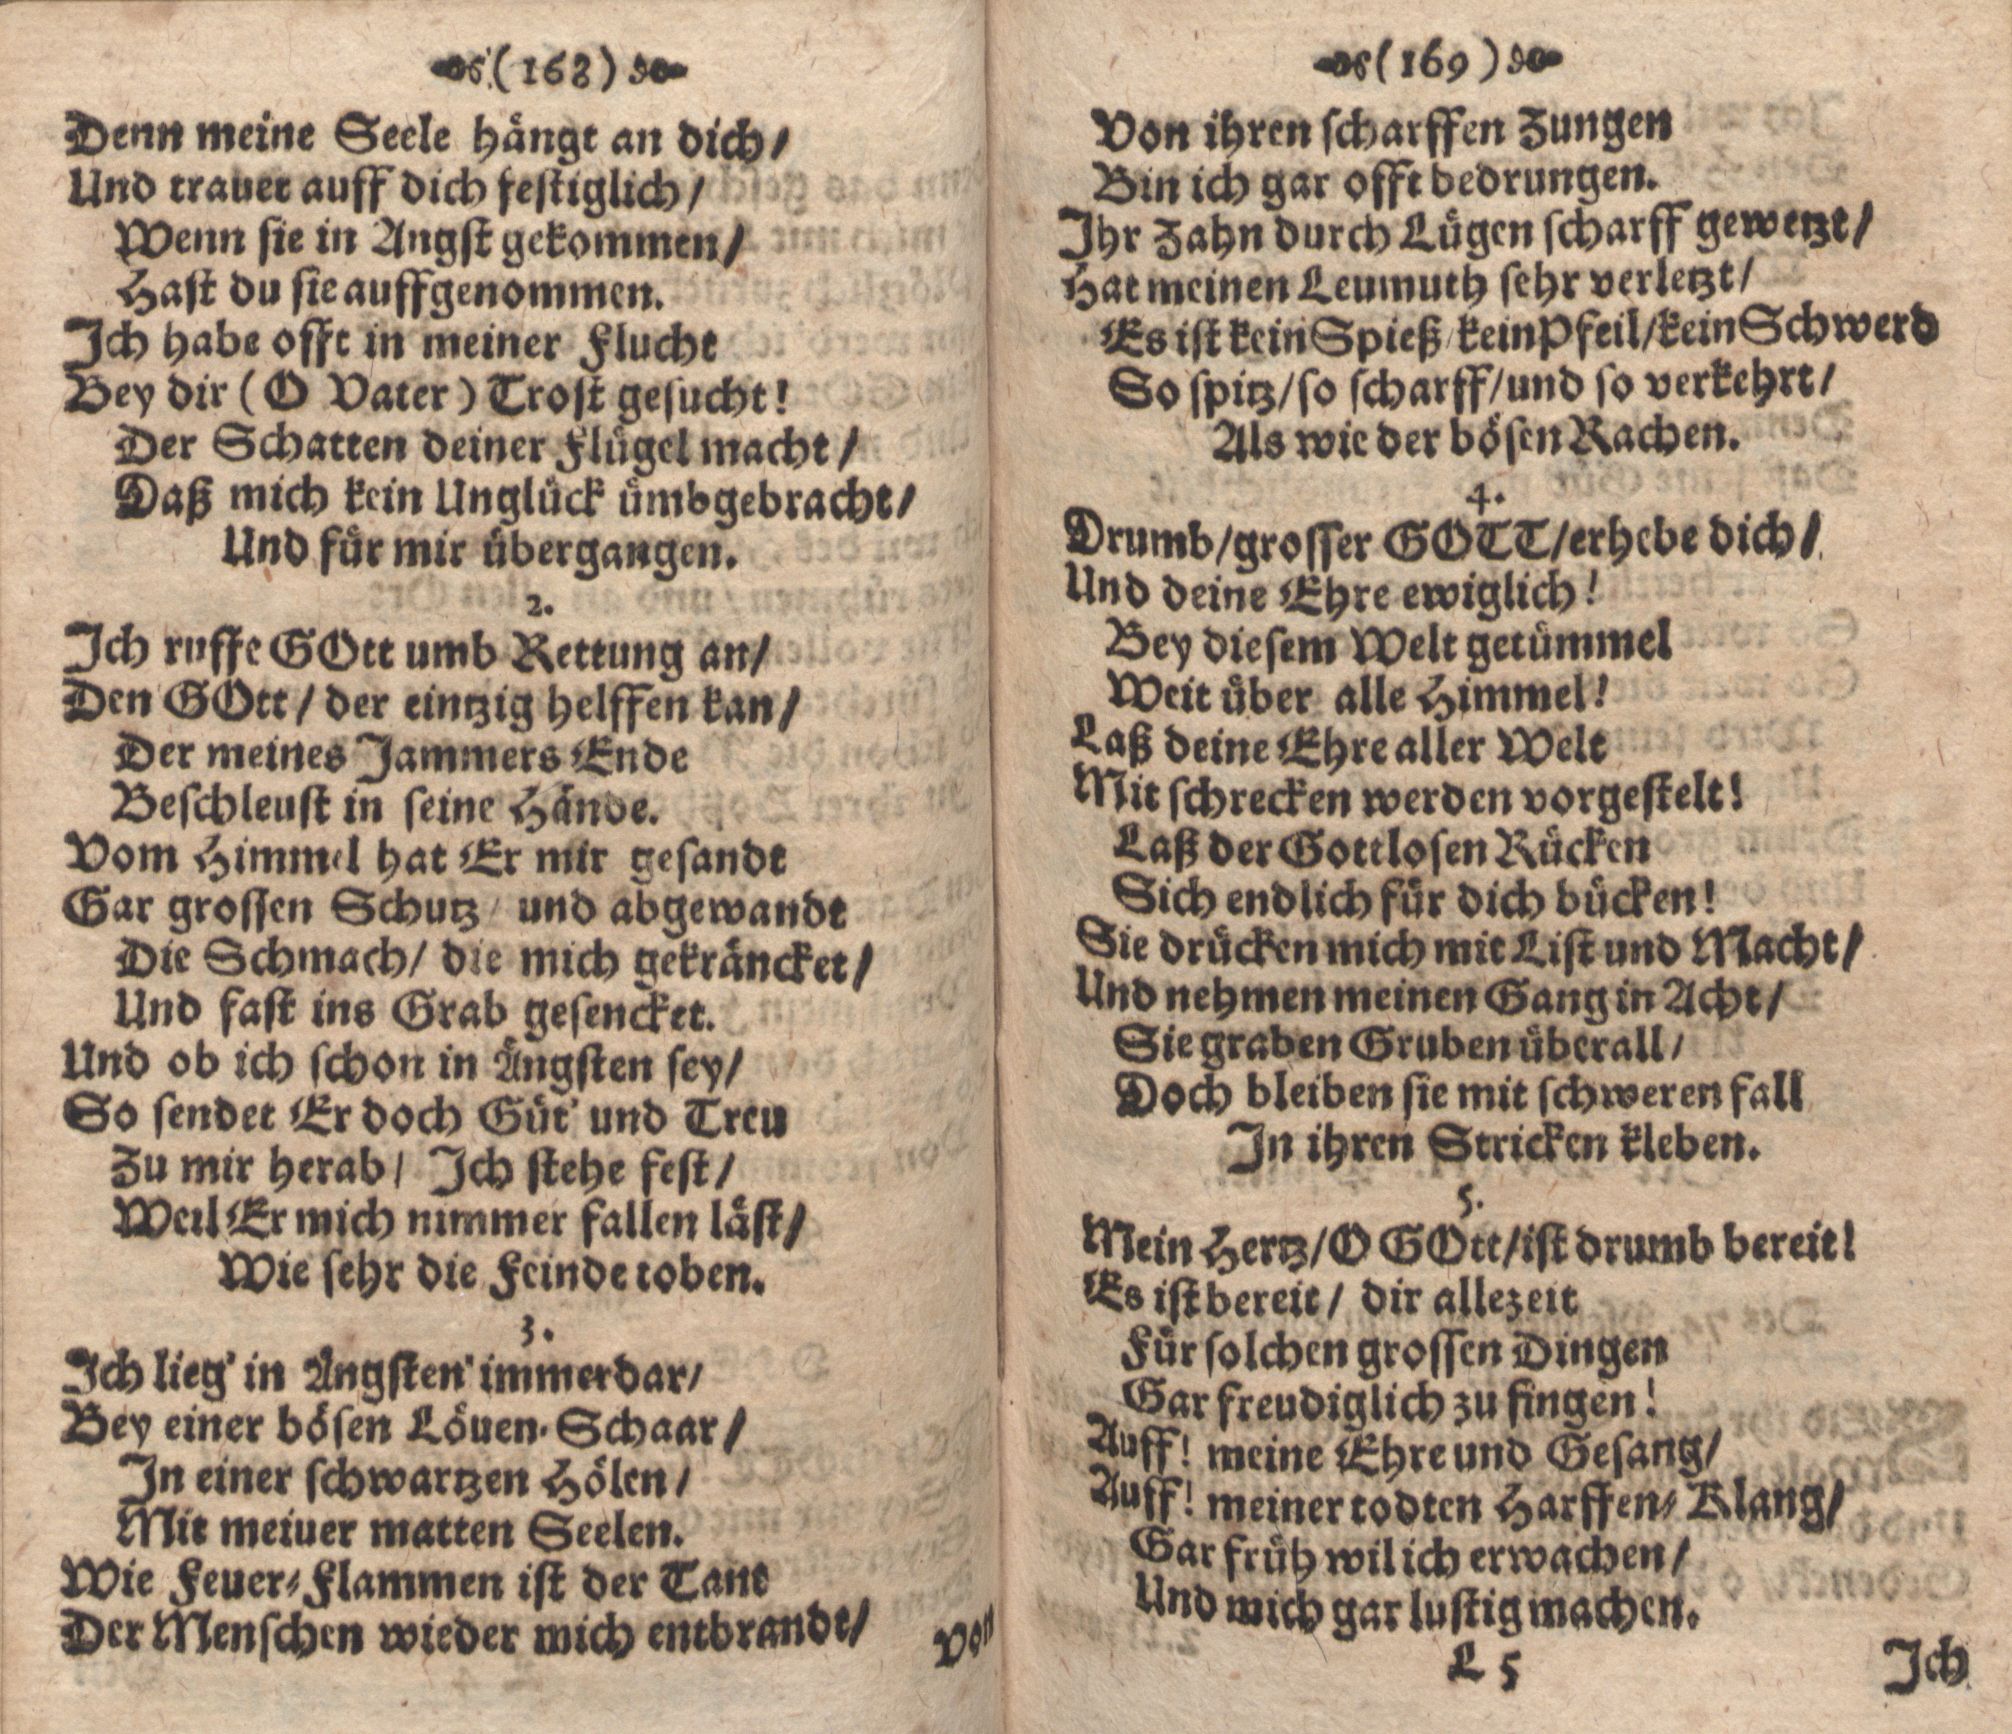 Der Verfolgete, Errettete und Lobsingende David (1686) | 85. (168-169) Основной текст